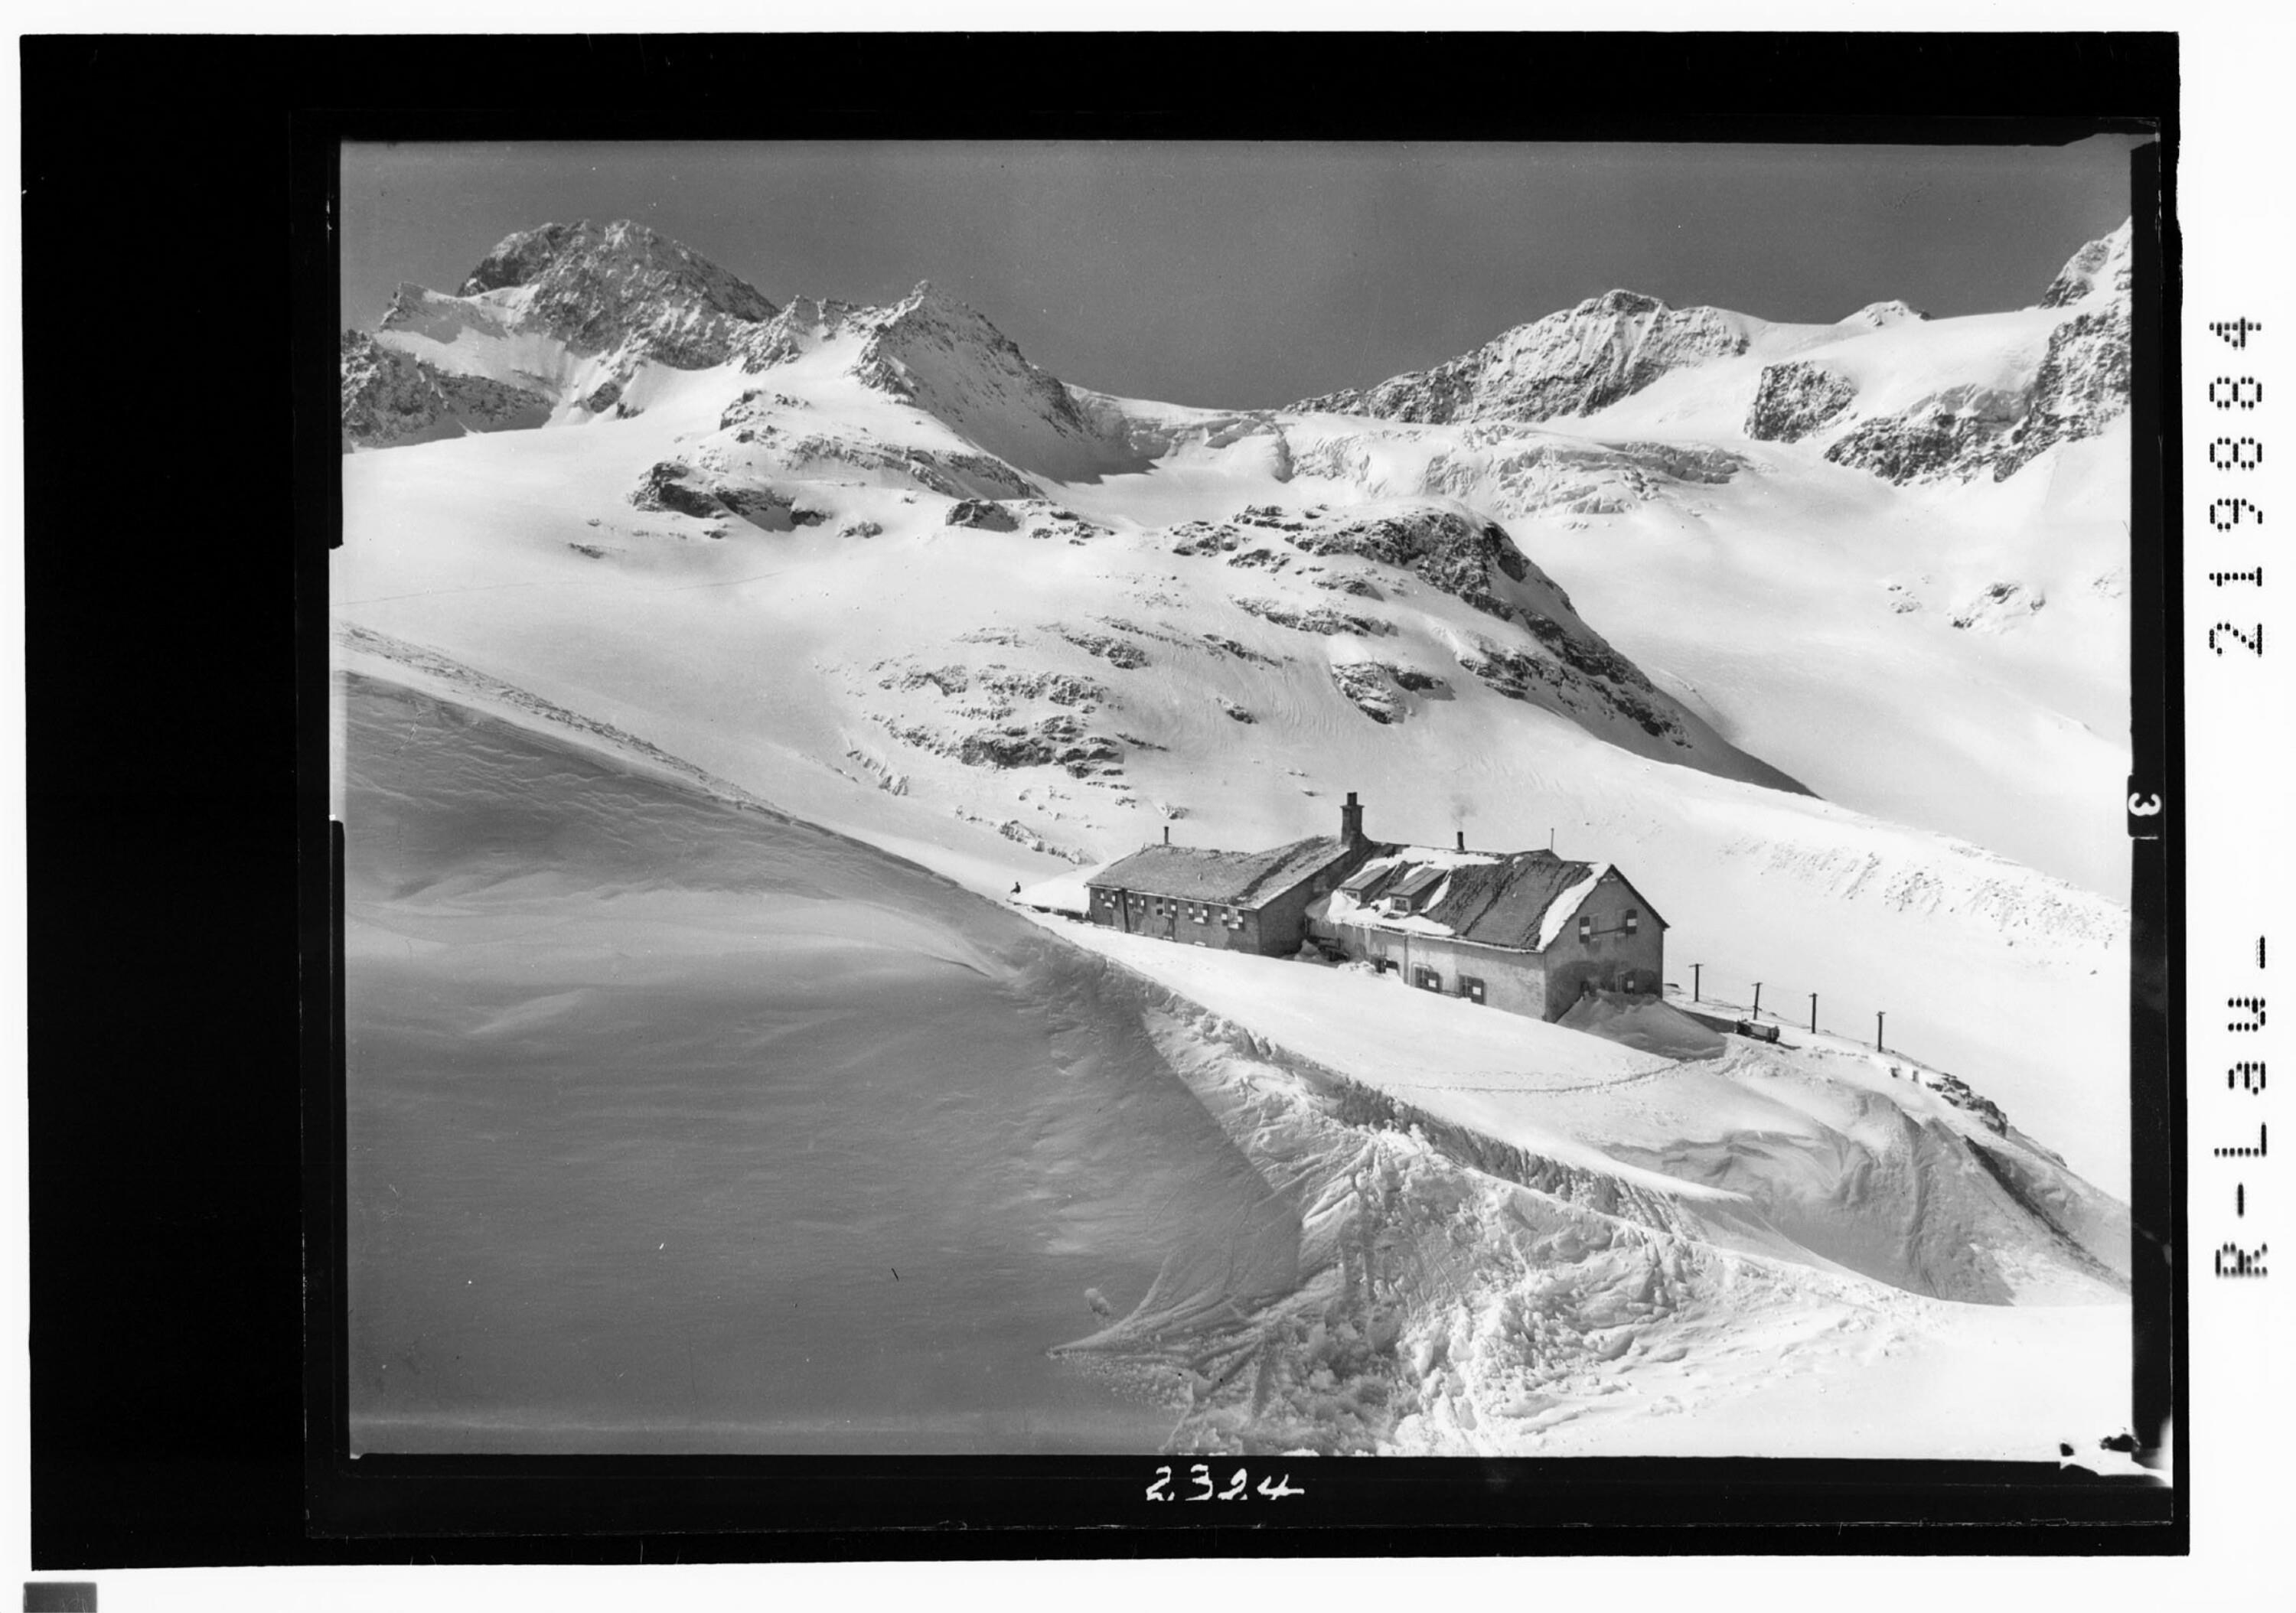 Wiesbadner Hütte 2510 m mit Piz Buin 3312 m, Signalhorn und Eckhorn></div>


    <hr>
    <div class=